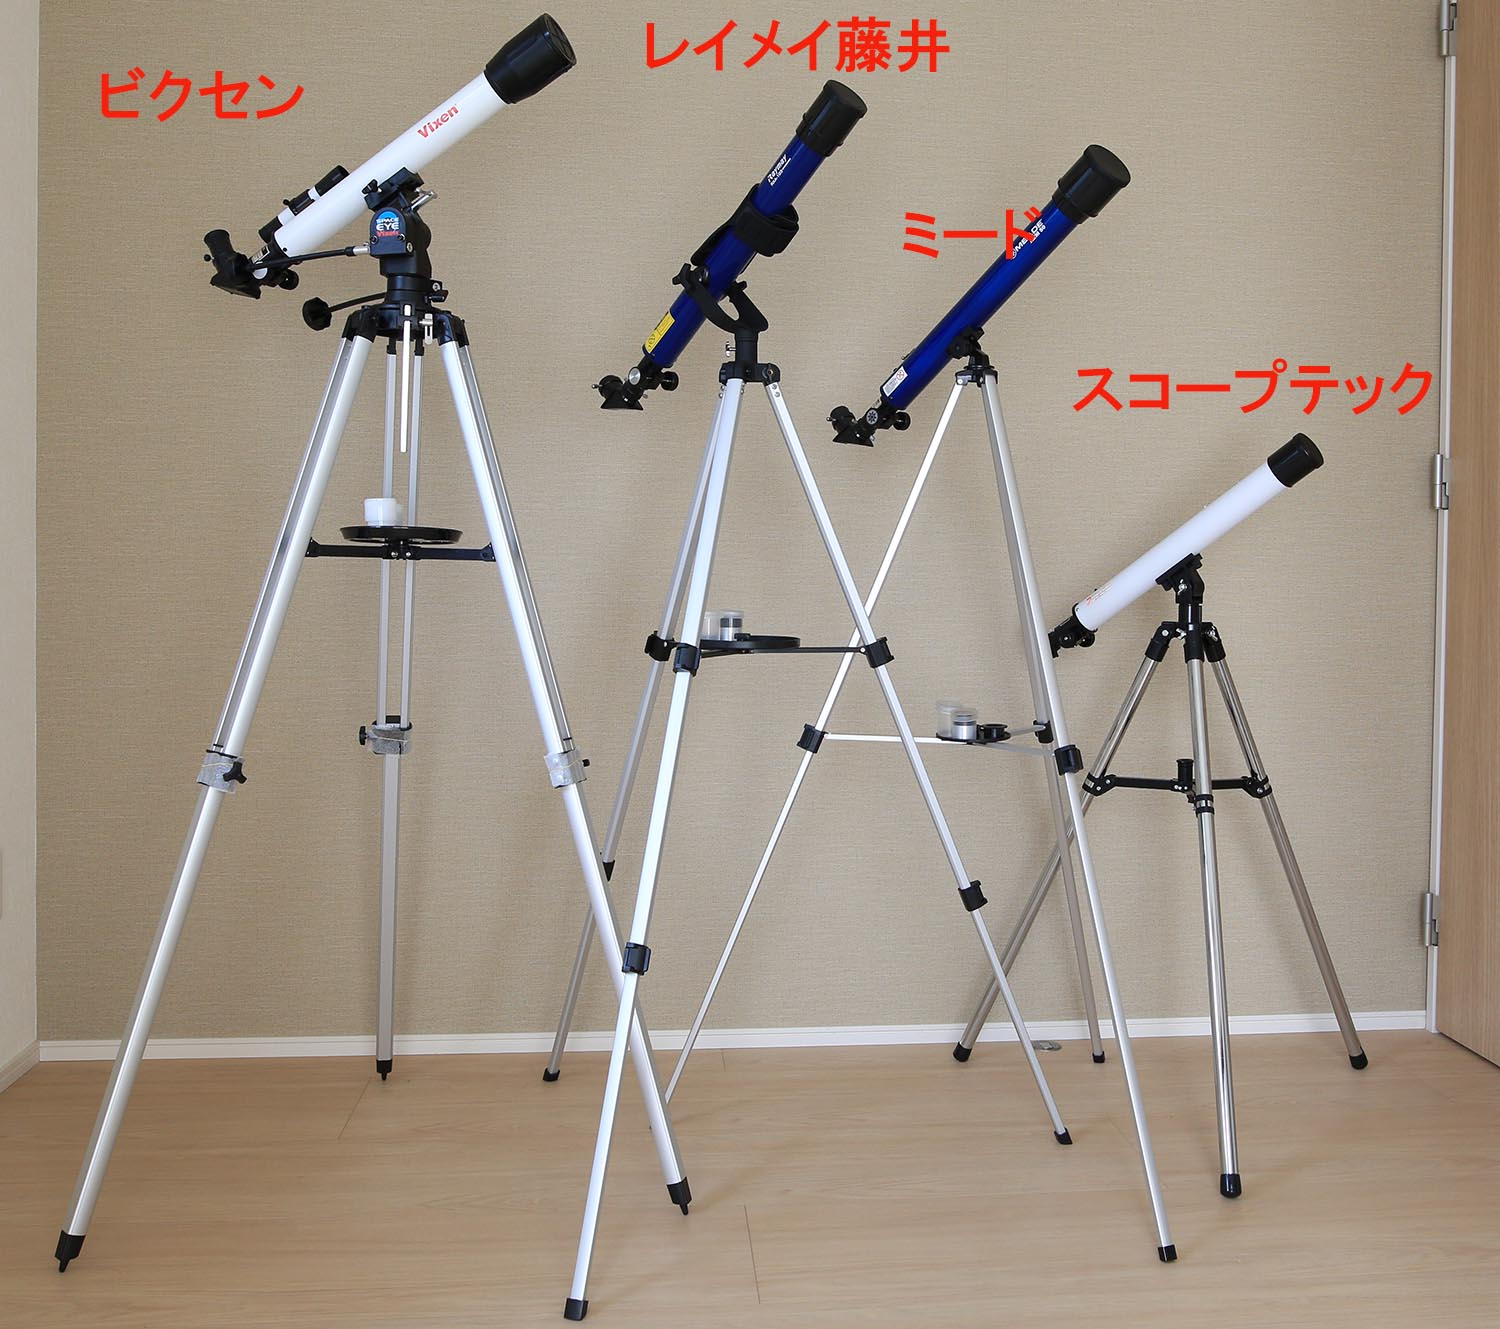 よく見える天体望遠鏡はどれだ！？連載(2)【1万円で買える天体望遠鏡 